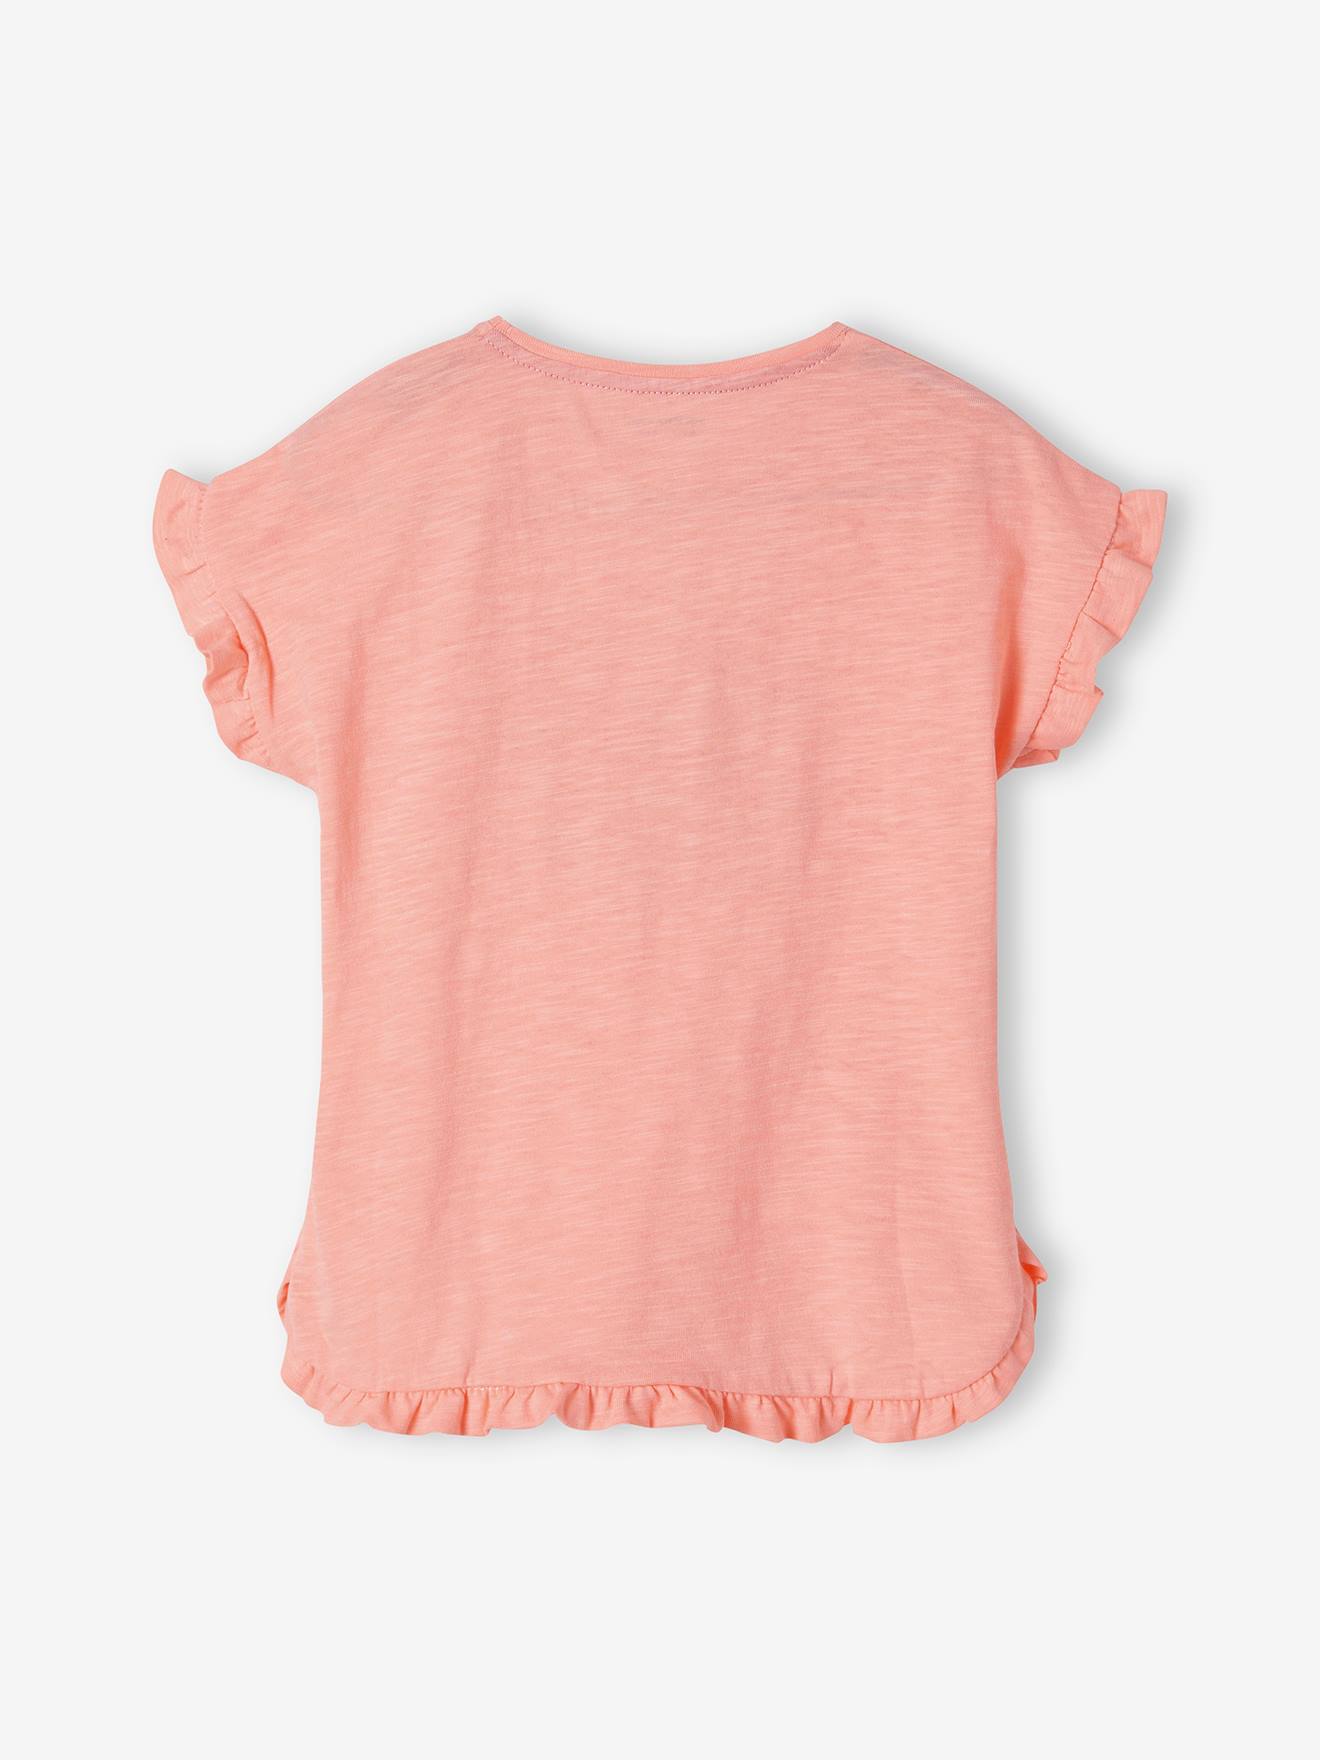 Baby T-Shirt Kurzarmshirt Mädchen Gr.74,80,86 rosa weiß NEU Sommer 